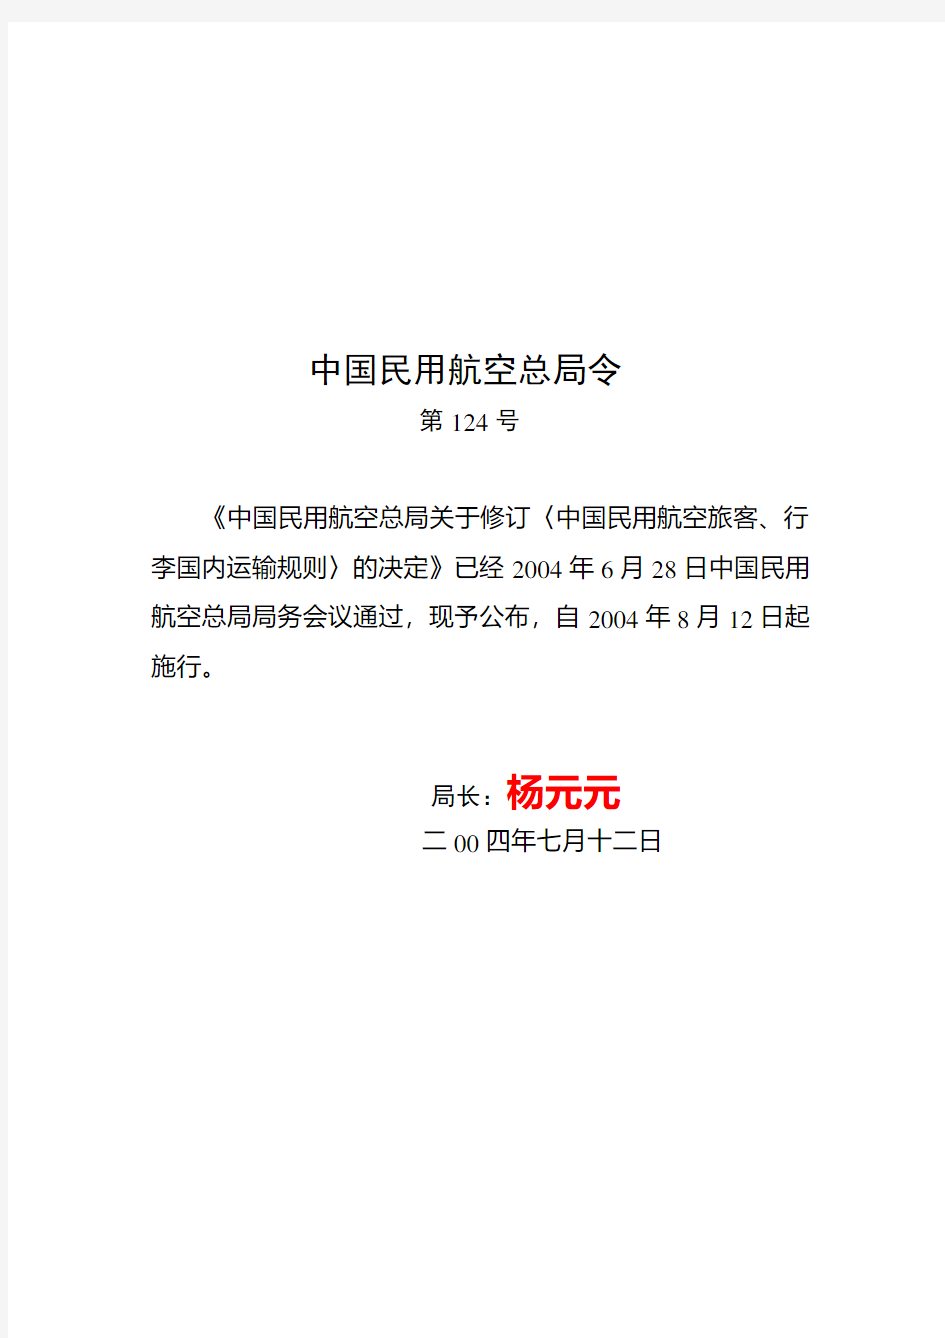 CCAR-271TR-R2中国民用航空总局关于修订〈中国民用航空旅客、行李国内运输规则〉的决定